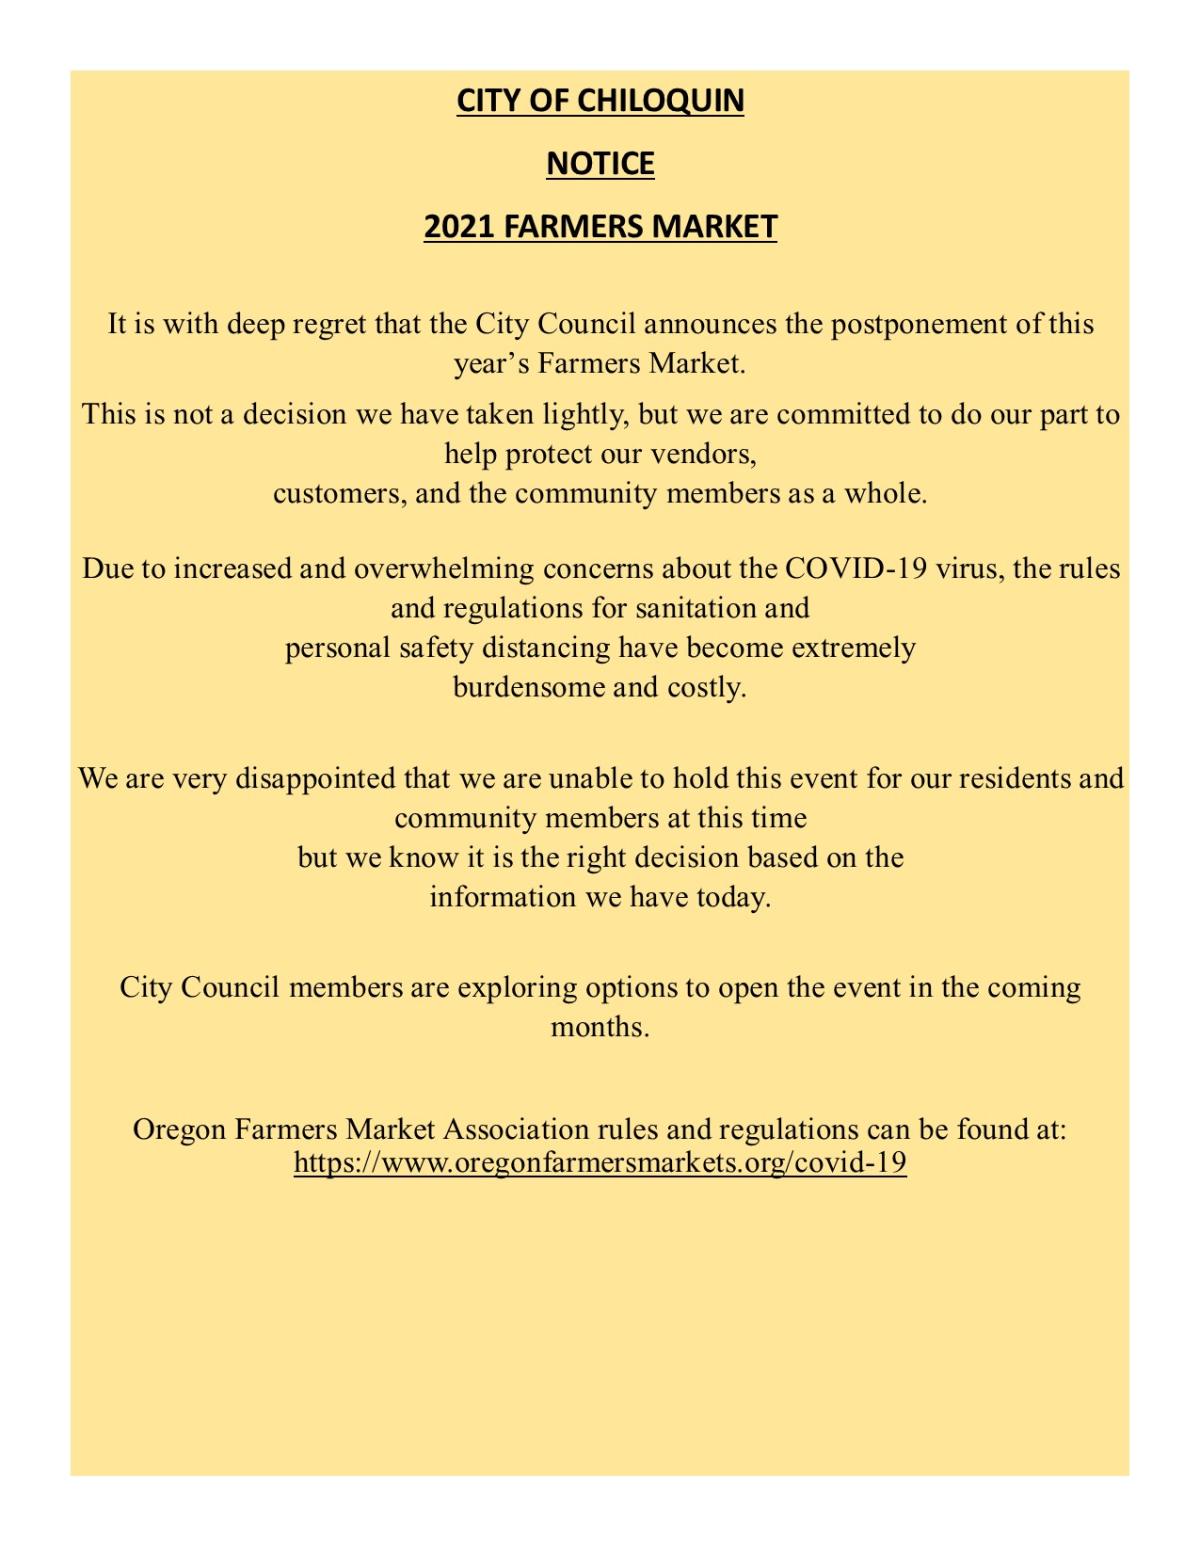 Farm & Craft Market Postponed